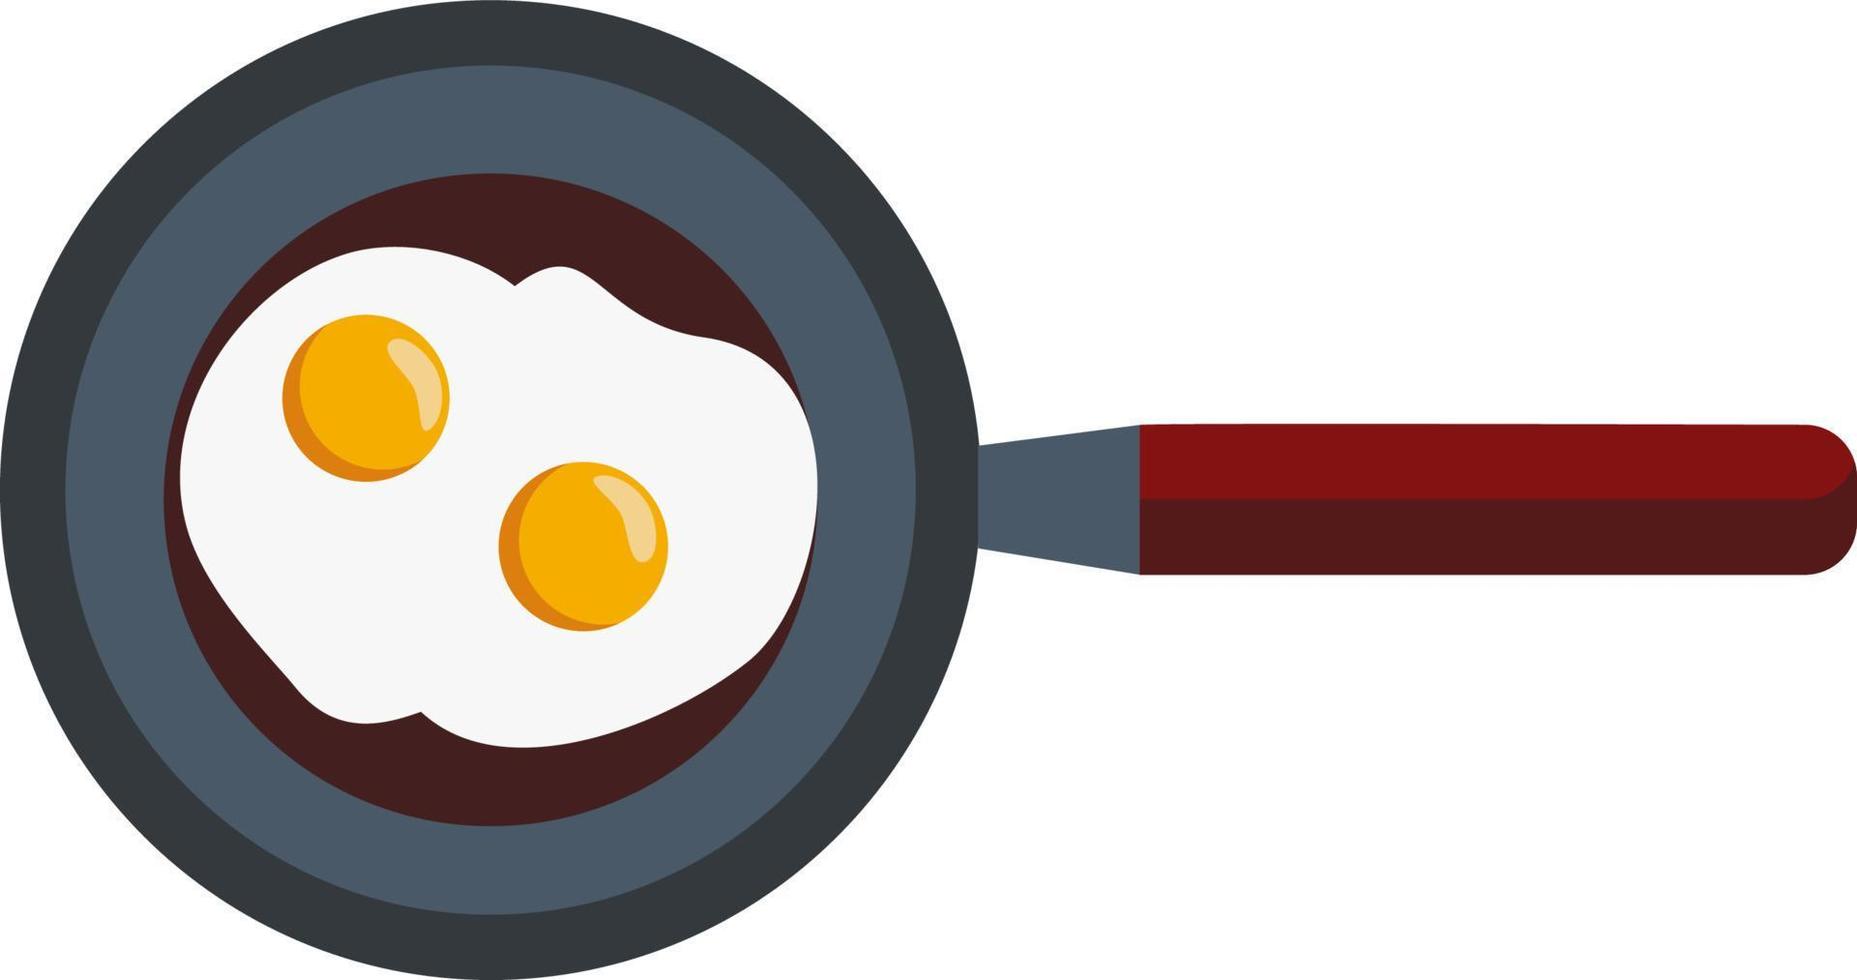 ovos em uma panela de salsicha, ilustração vetorial ou colorida. vetor